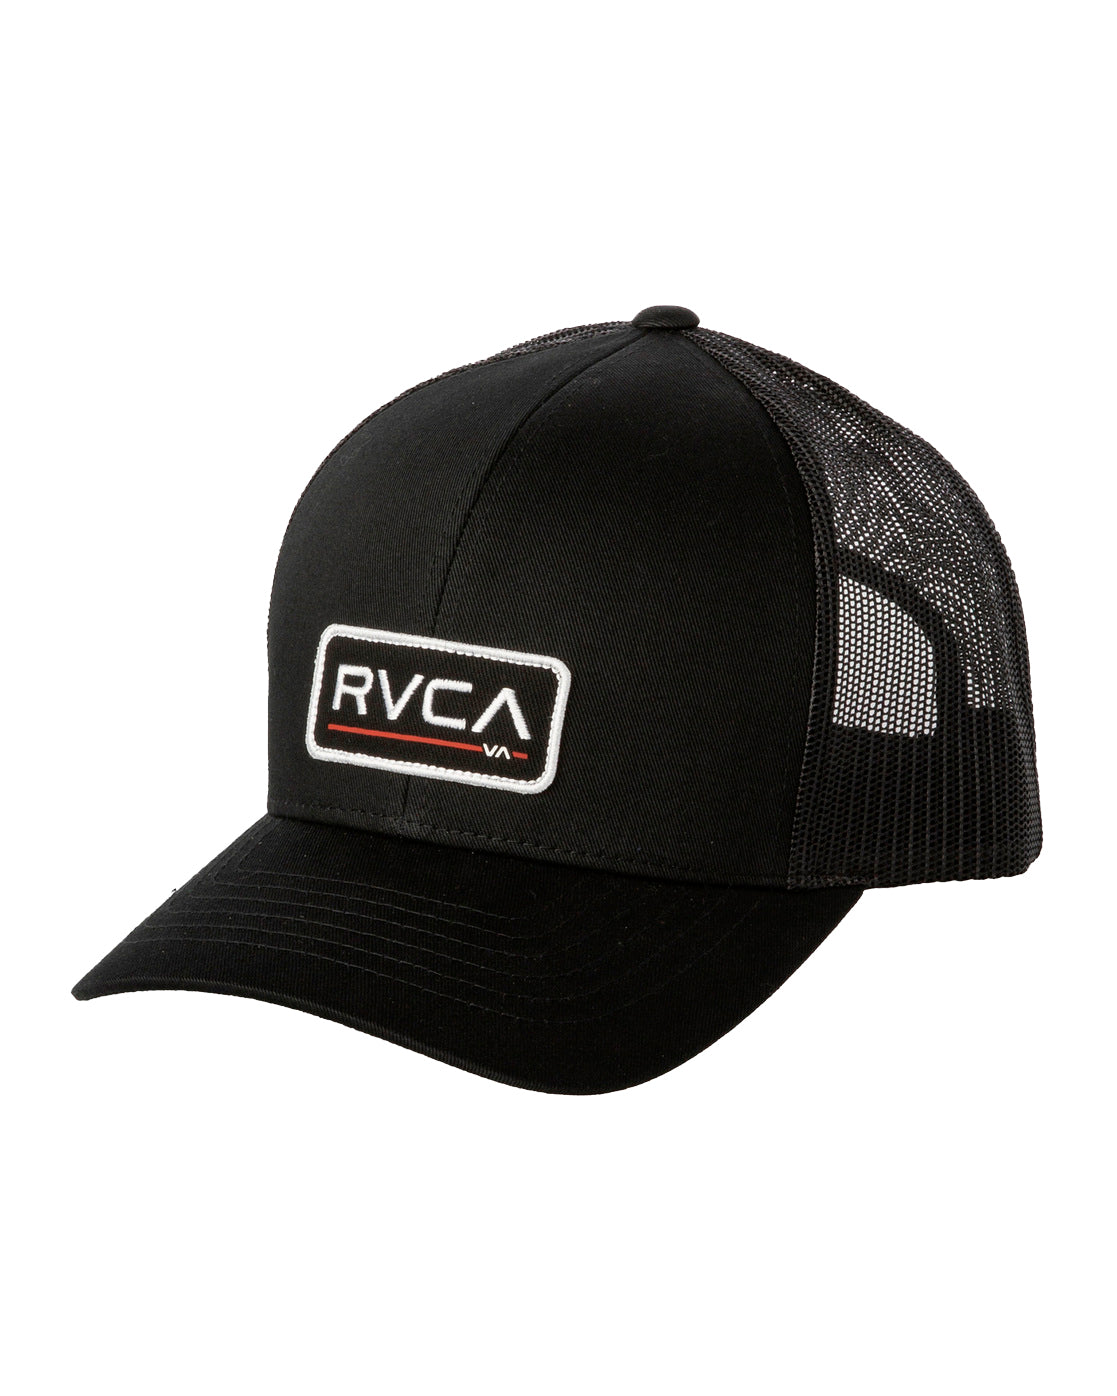 RVCA Ticket Trucker Hat BBK OS